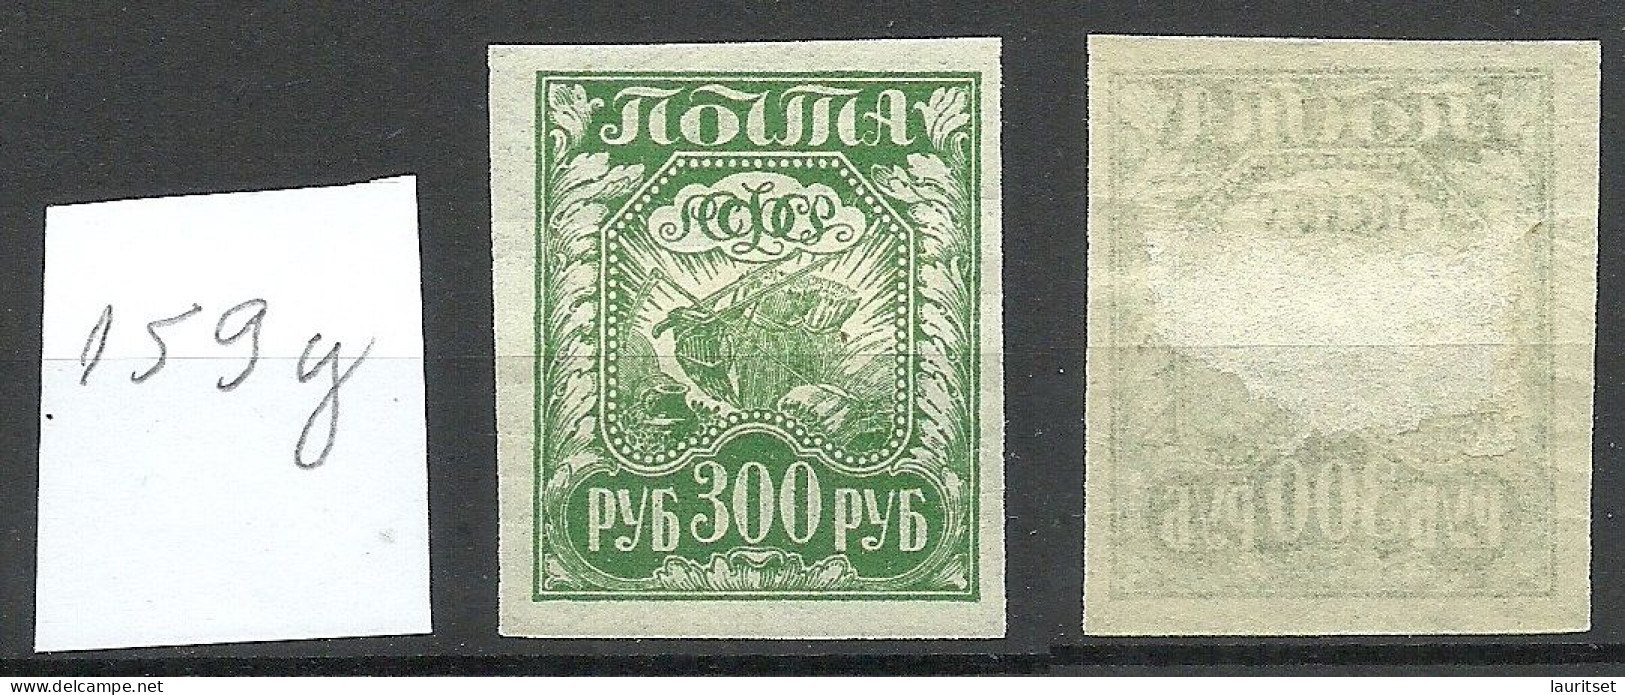 RUSSIA 1921 Michel 159 Y (thin Paper) * - Neufs